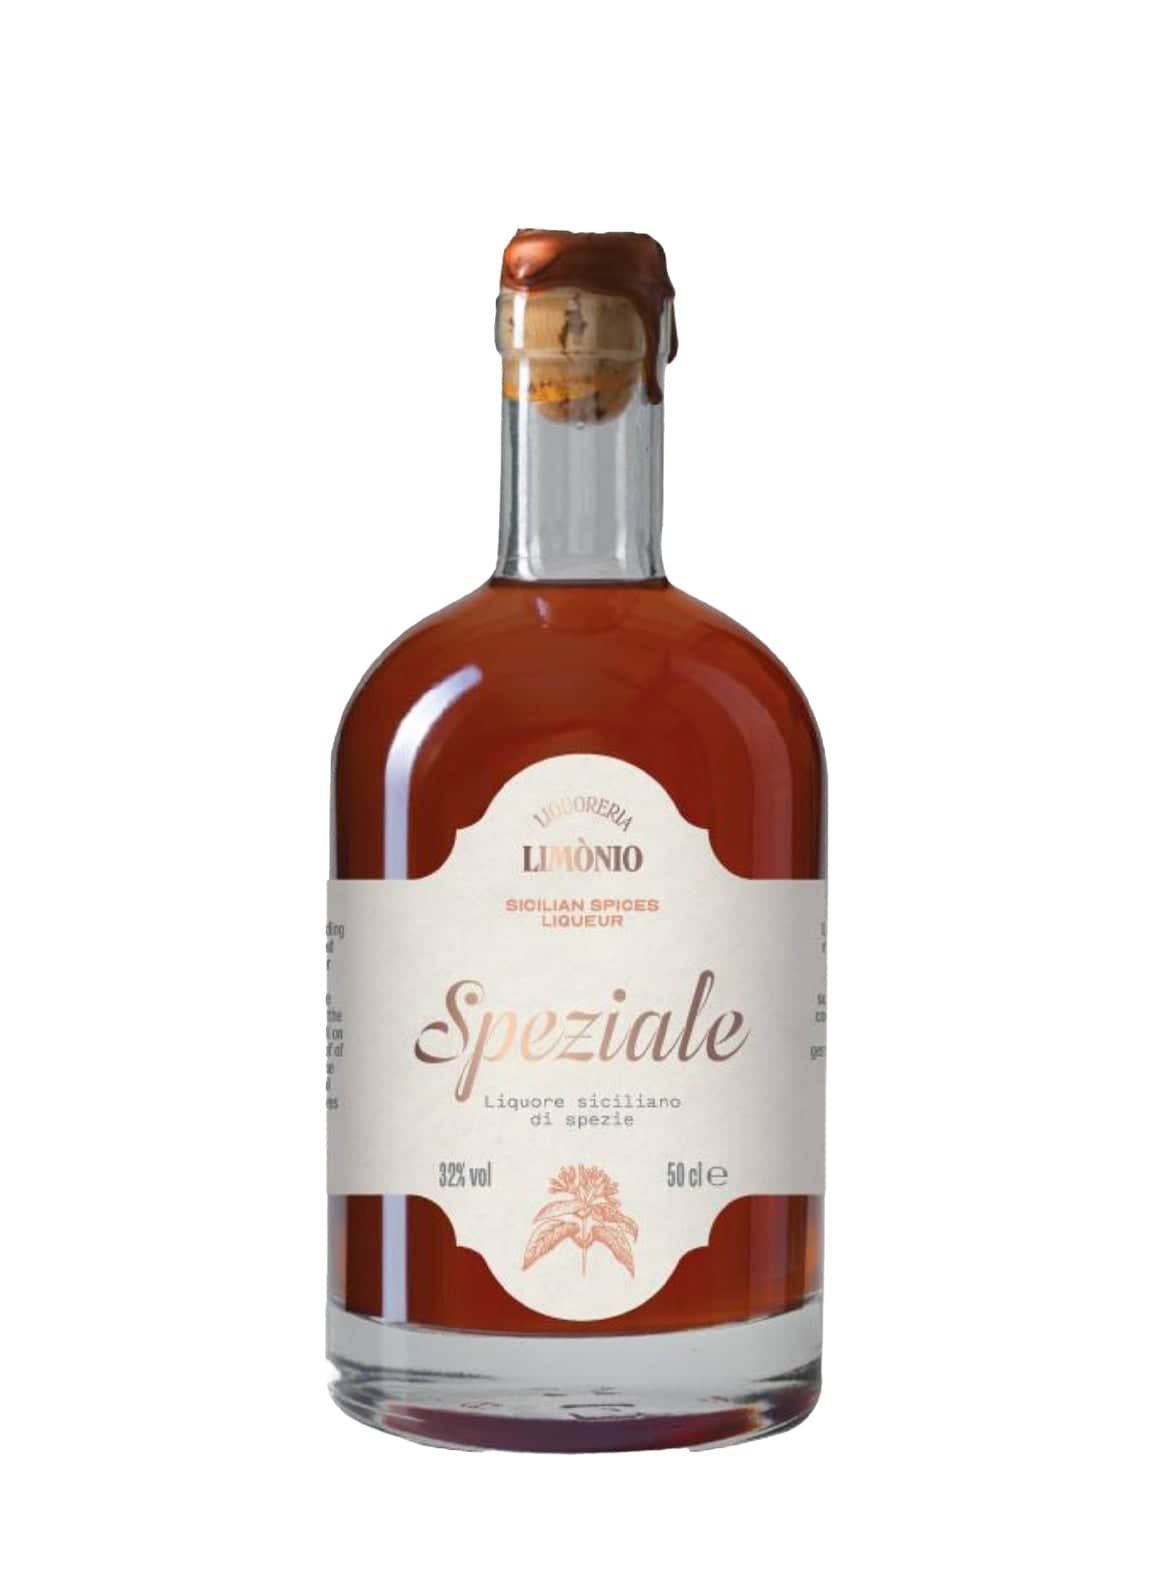 Limonio Speziale Spirits 500ml spices of liqueur | France 32